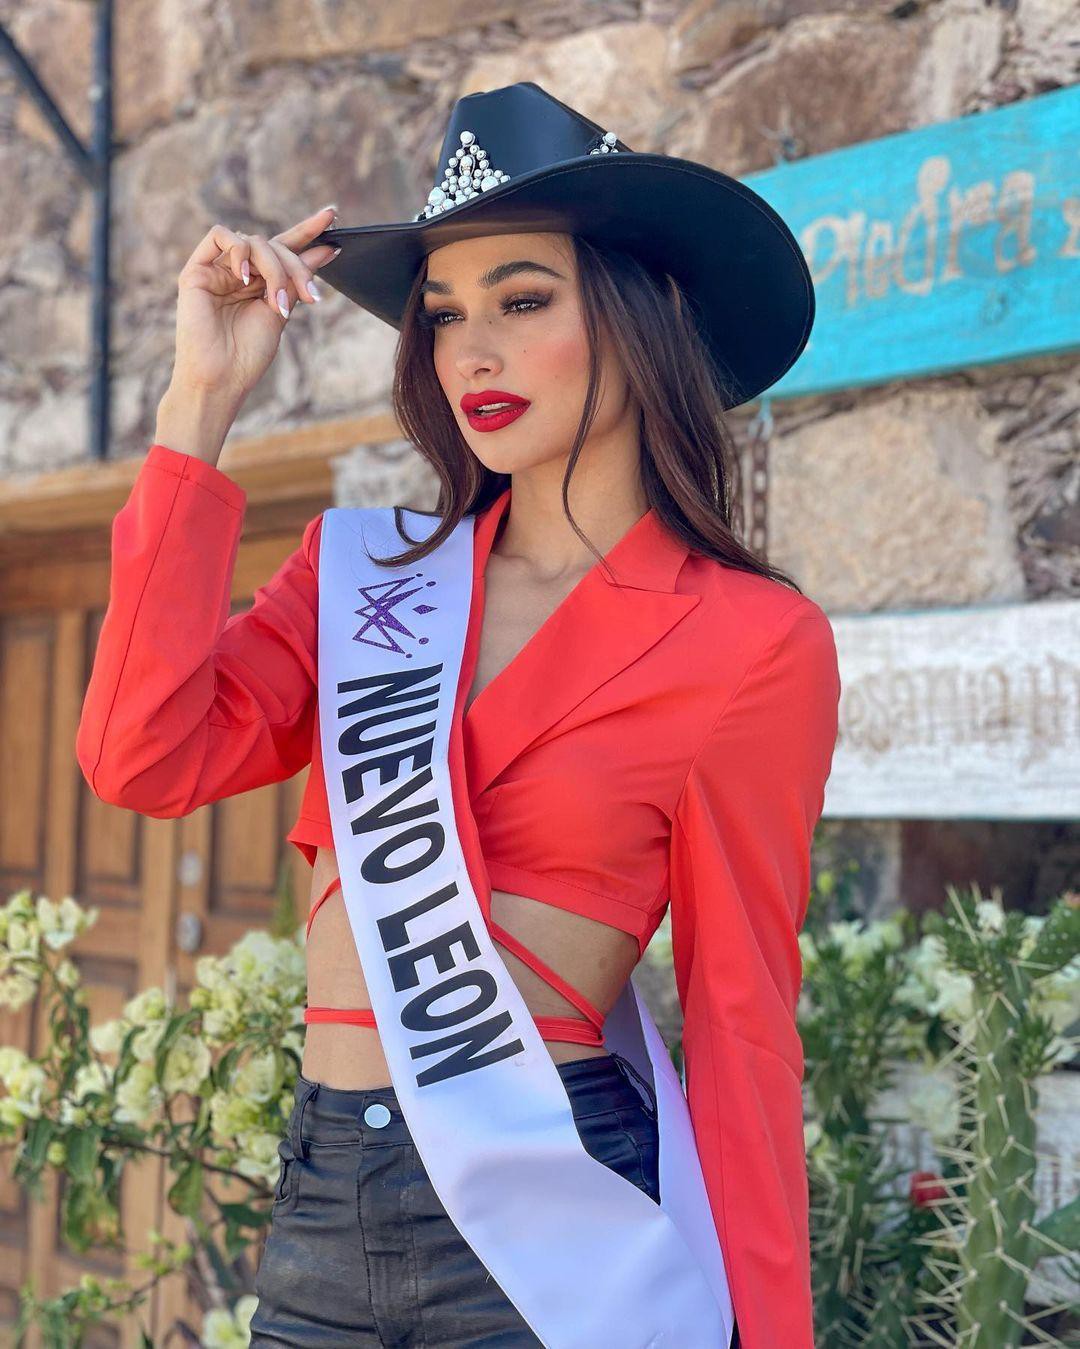 Nhan sắc xinh đẹp gây tiếc nuối của người đẹp bị trao nhầm vương miện ở chung kết Hoa hậu Mexico - Ảnh 3.